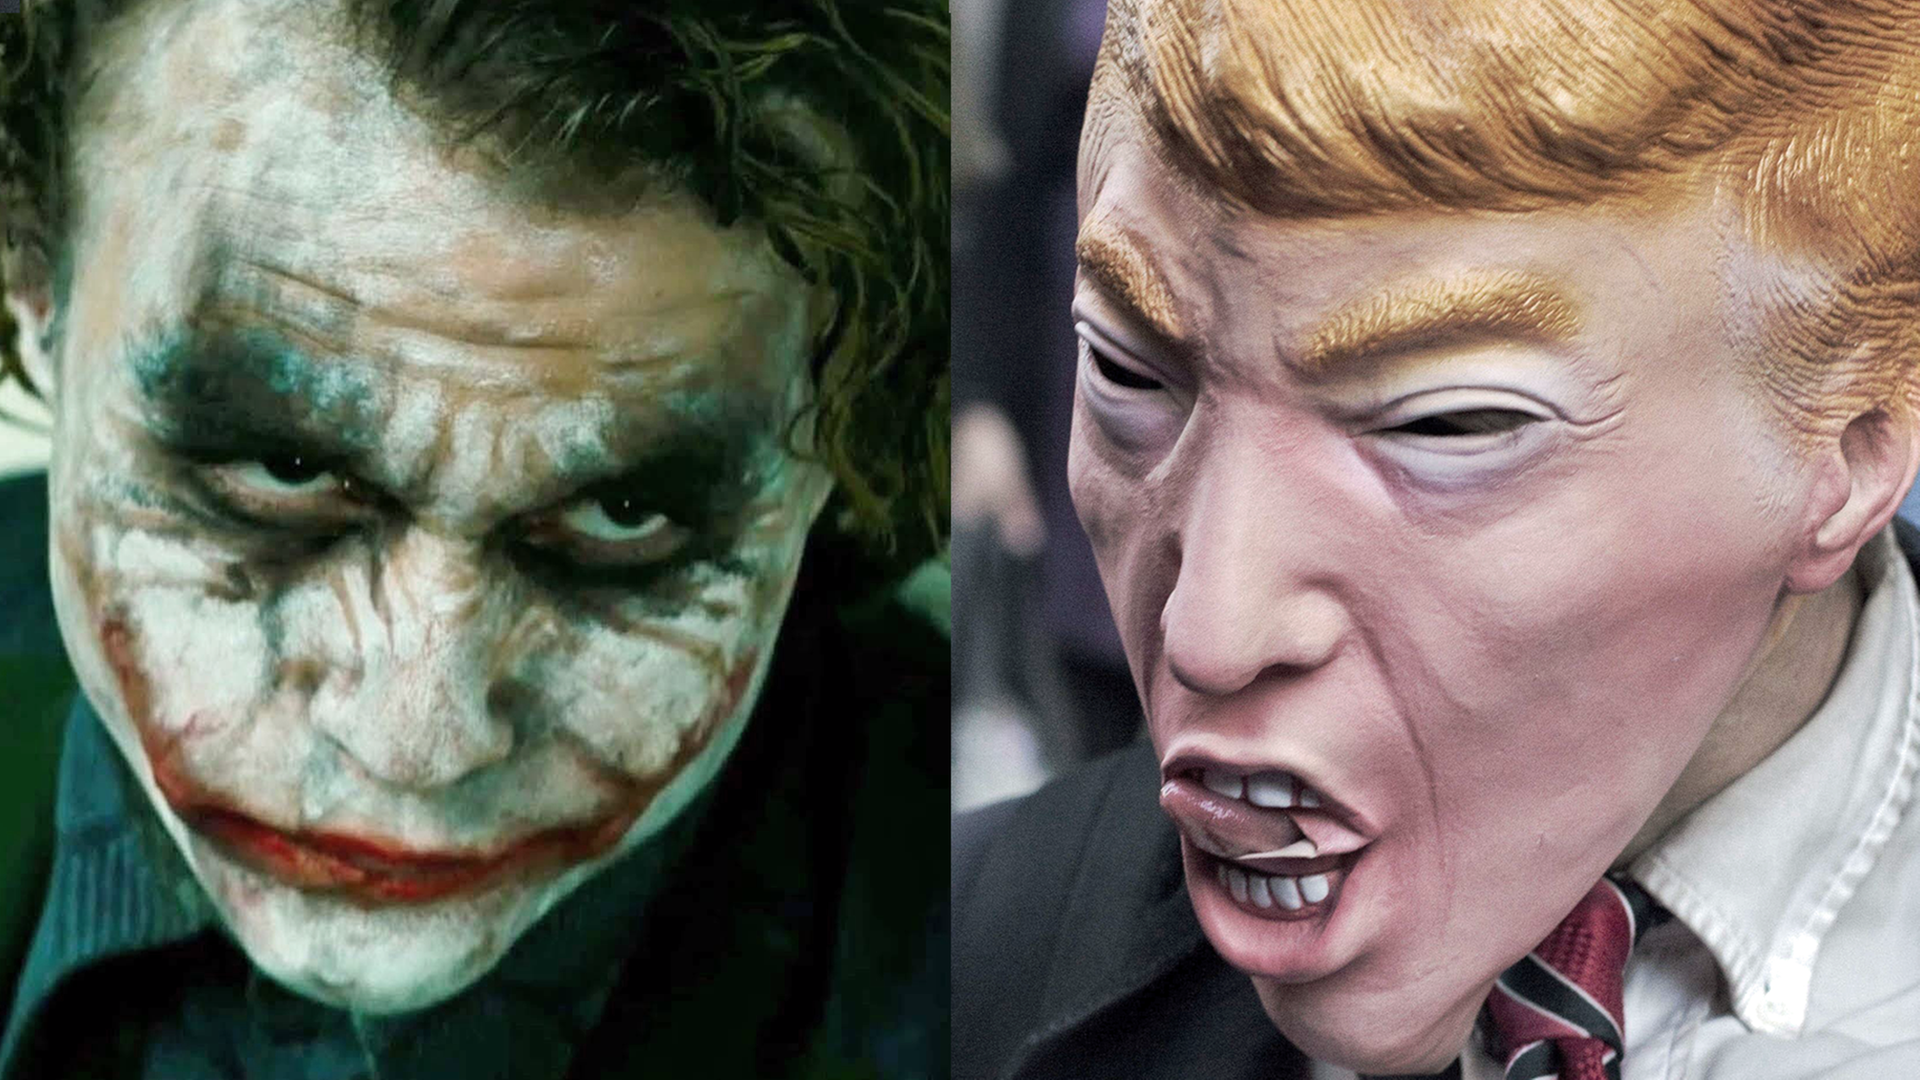 Links: Der inzwischen verstorbene Schauspieler Heath Ledger als Joker in in The Dark Knight. Rechts: Bei einem Protest gegen Donald Trump trägt ein Demonstrant eine Maske.